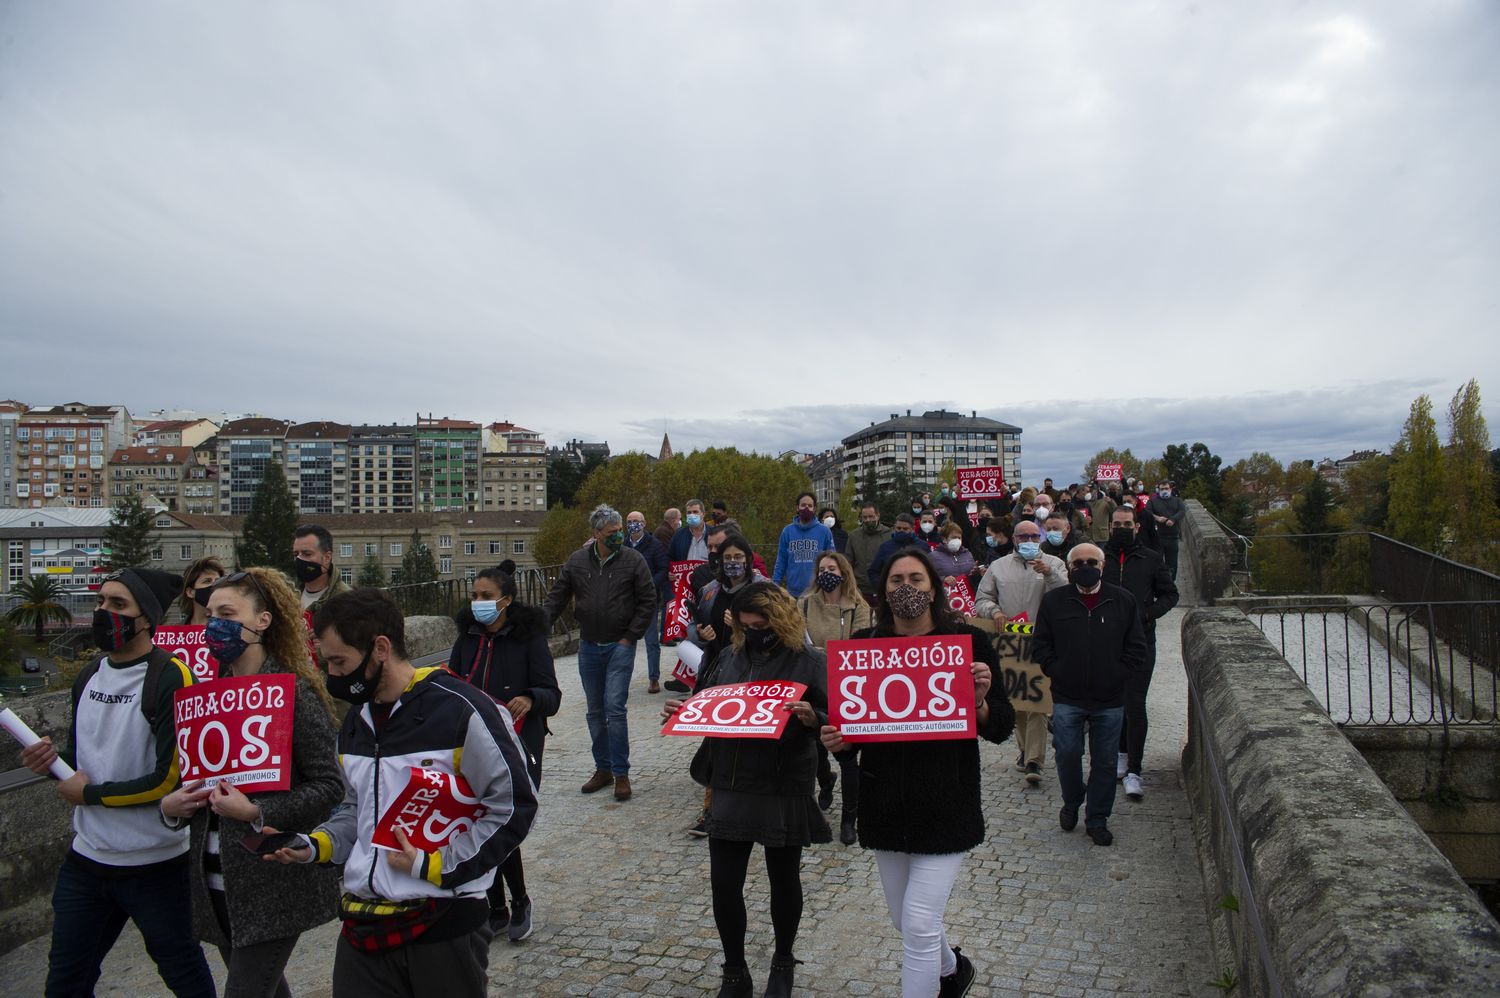 Ourense 4/11/20
Protesta del sector hostelero en el puente romano aprovechando el paso de la vuelta ciclista

Fotos Martiño Pinal